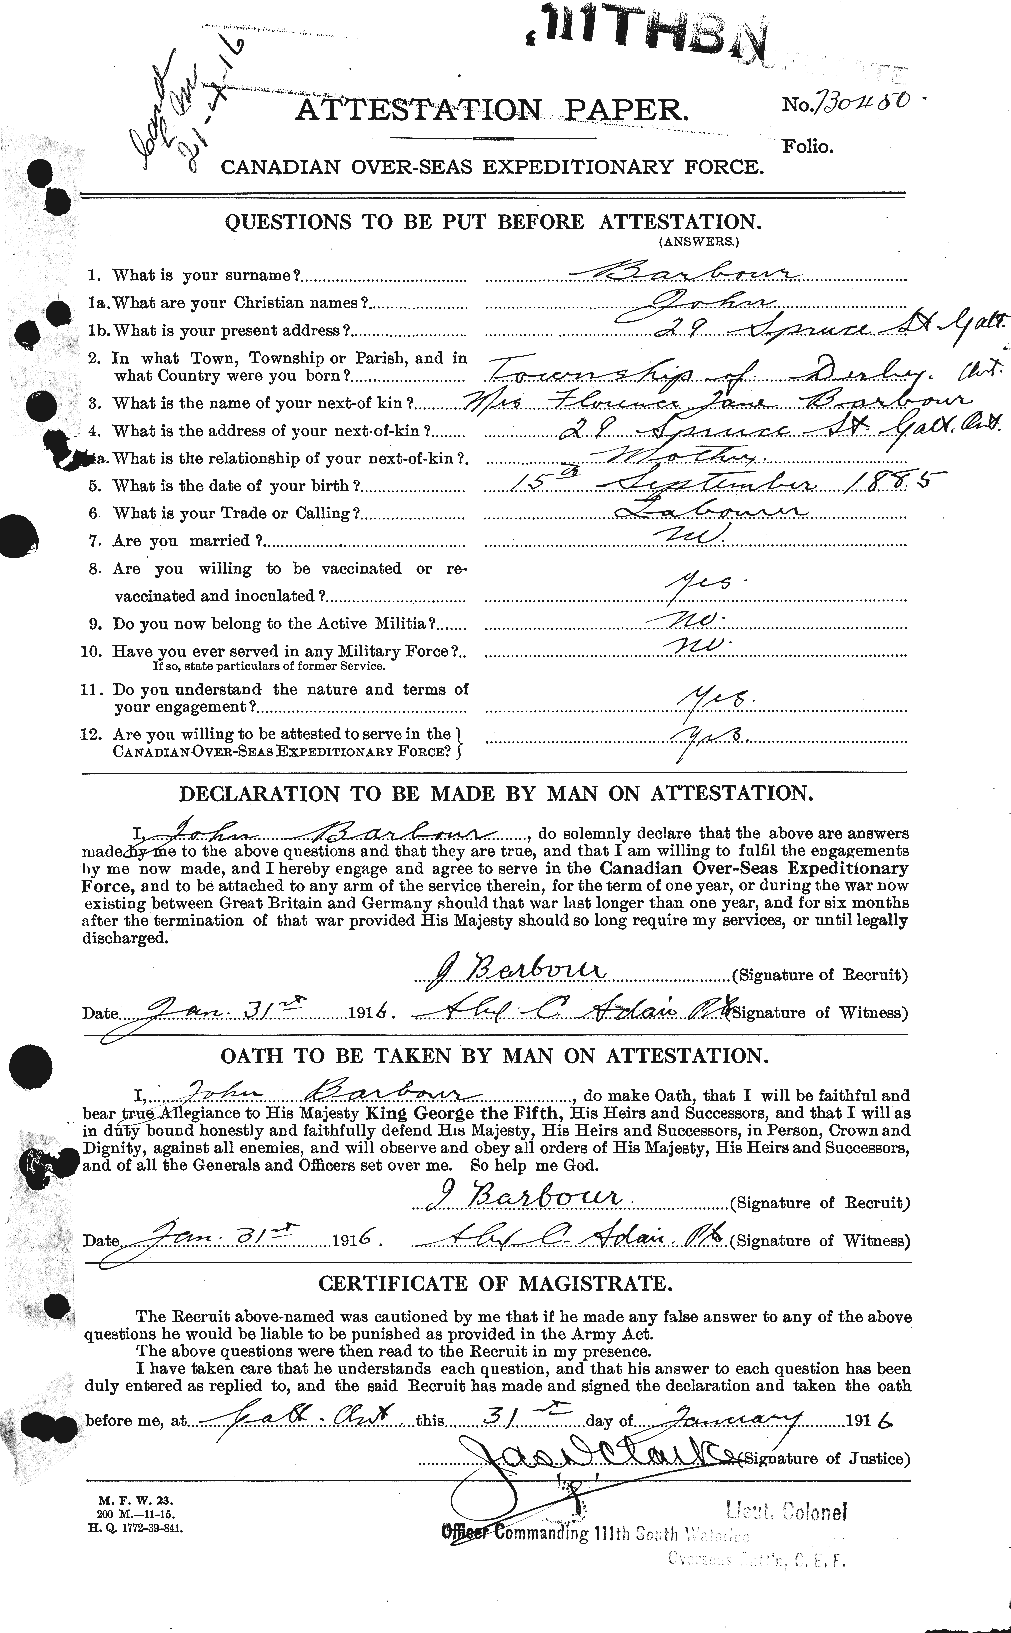 Dossiers du Personnel de la Première Guerre mondiale - CEC 221021a